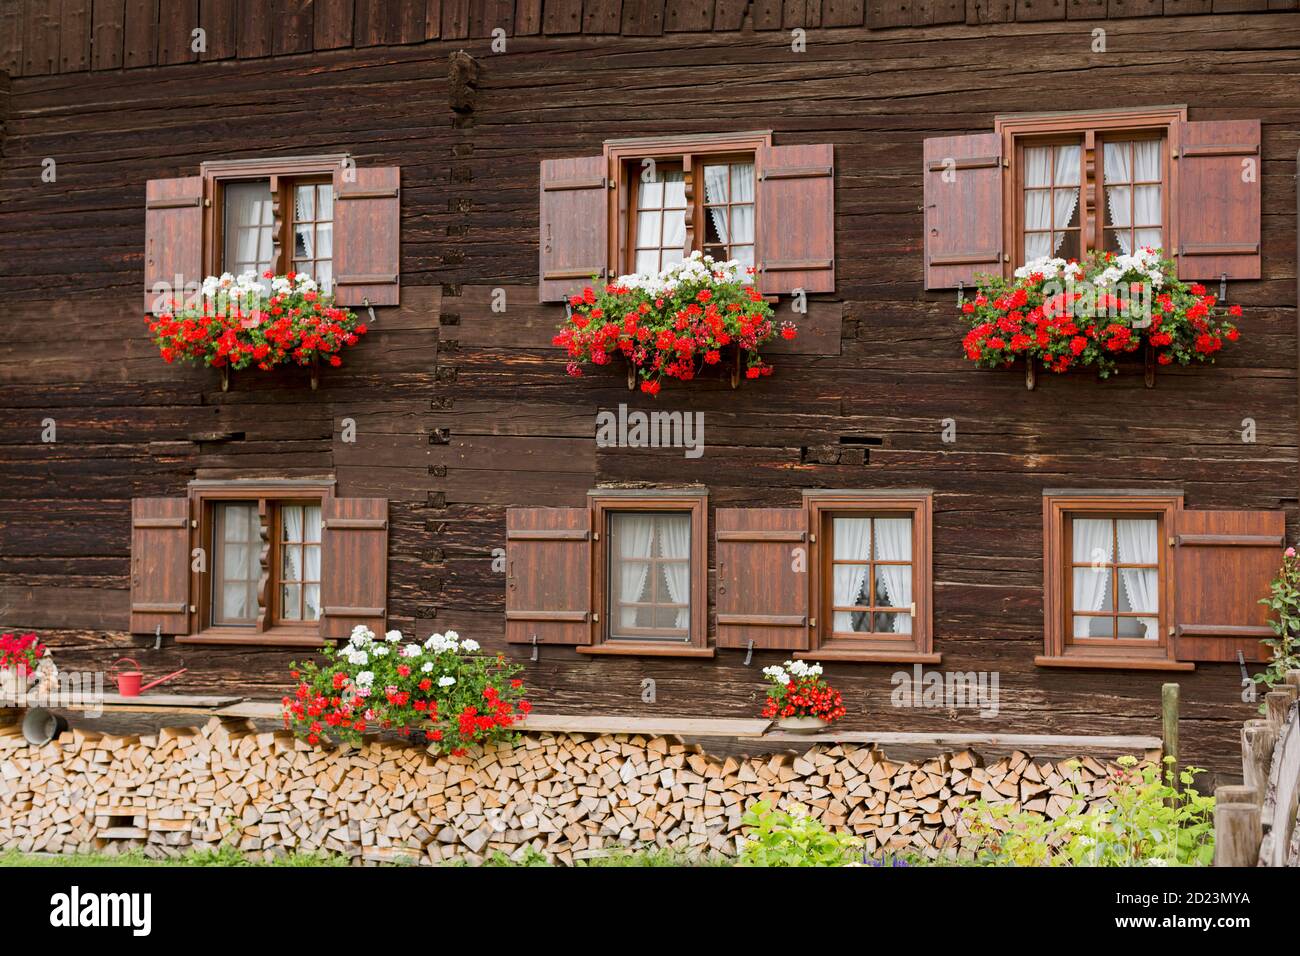 Fenster Blumen Banque d'image et photos - Alamy